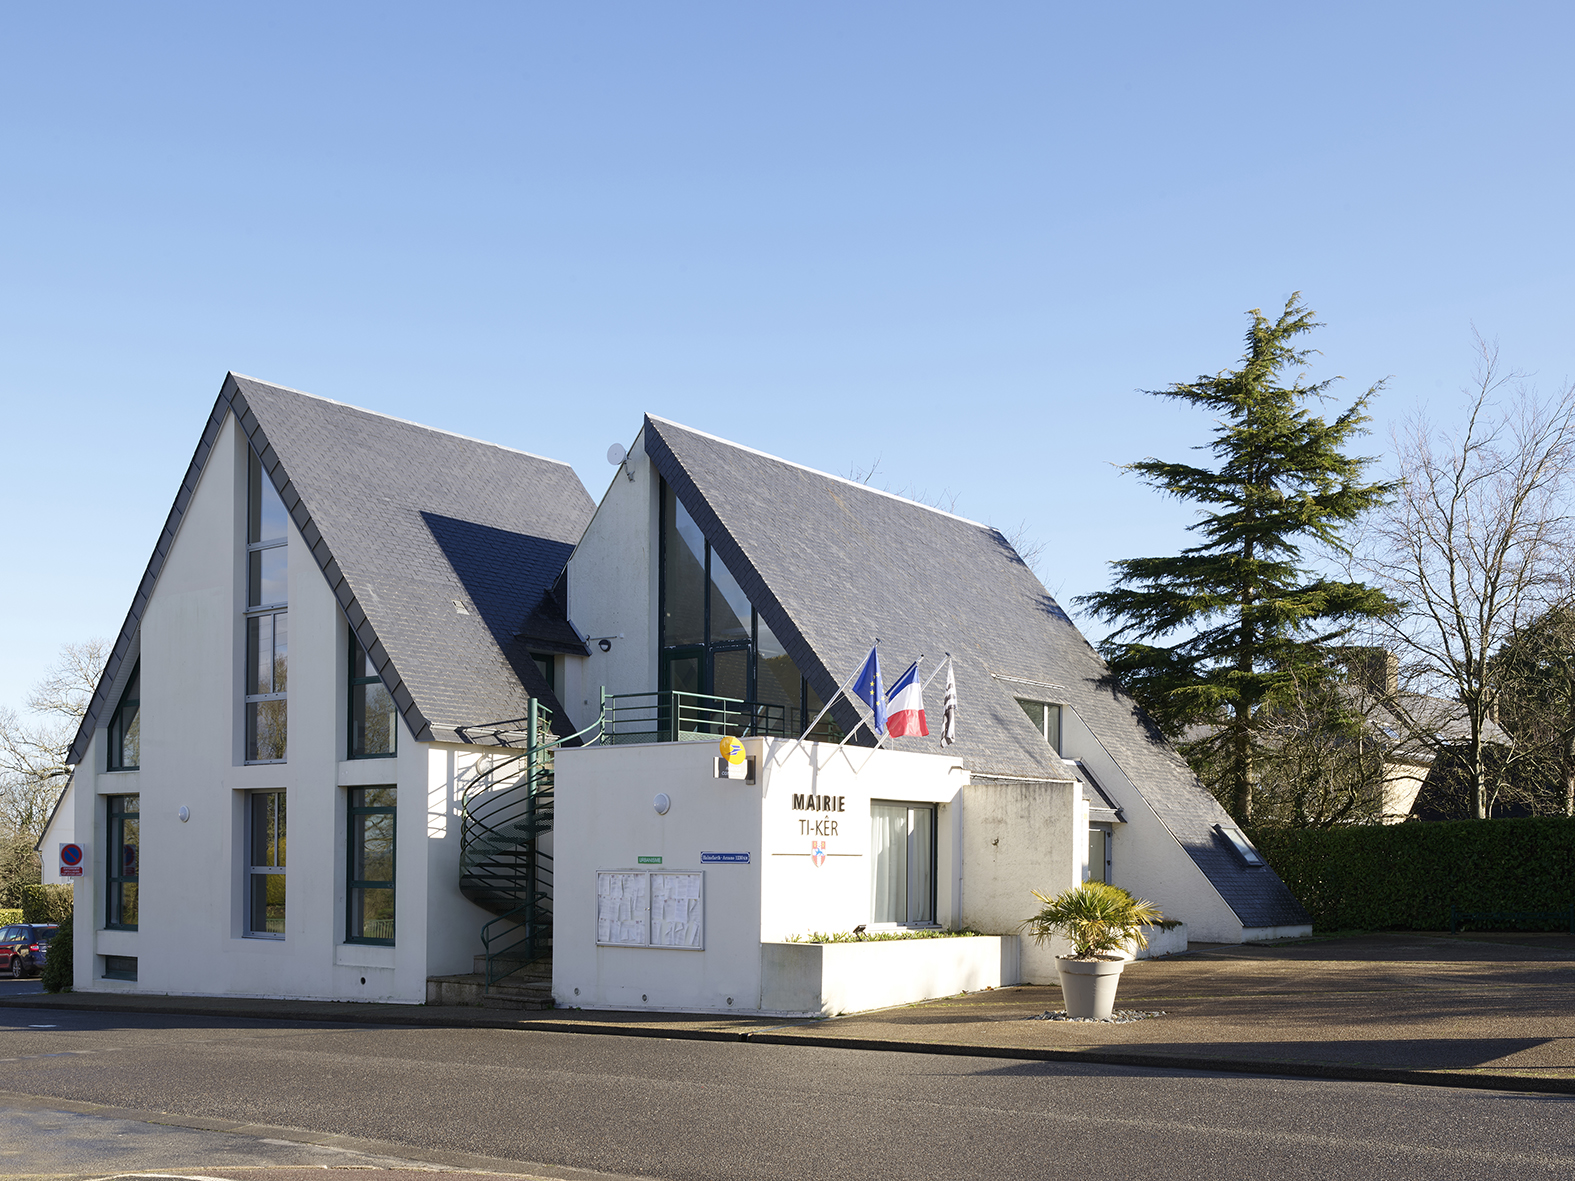 Réaménagement de la mairie d’ARZANO, Finistère : Image 3